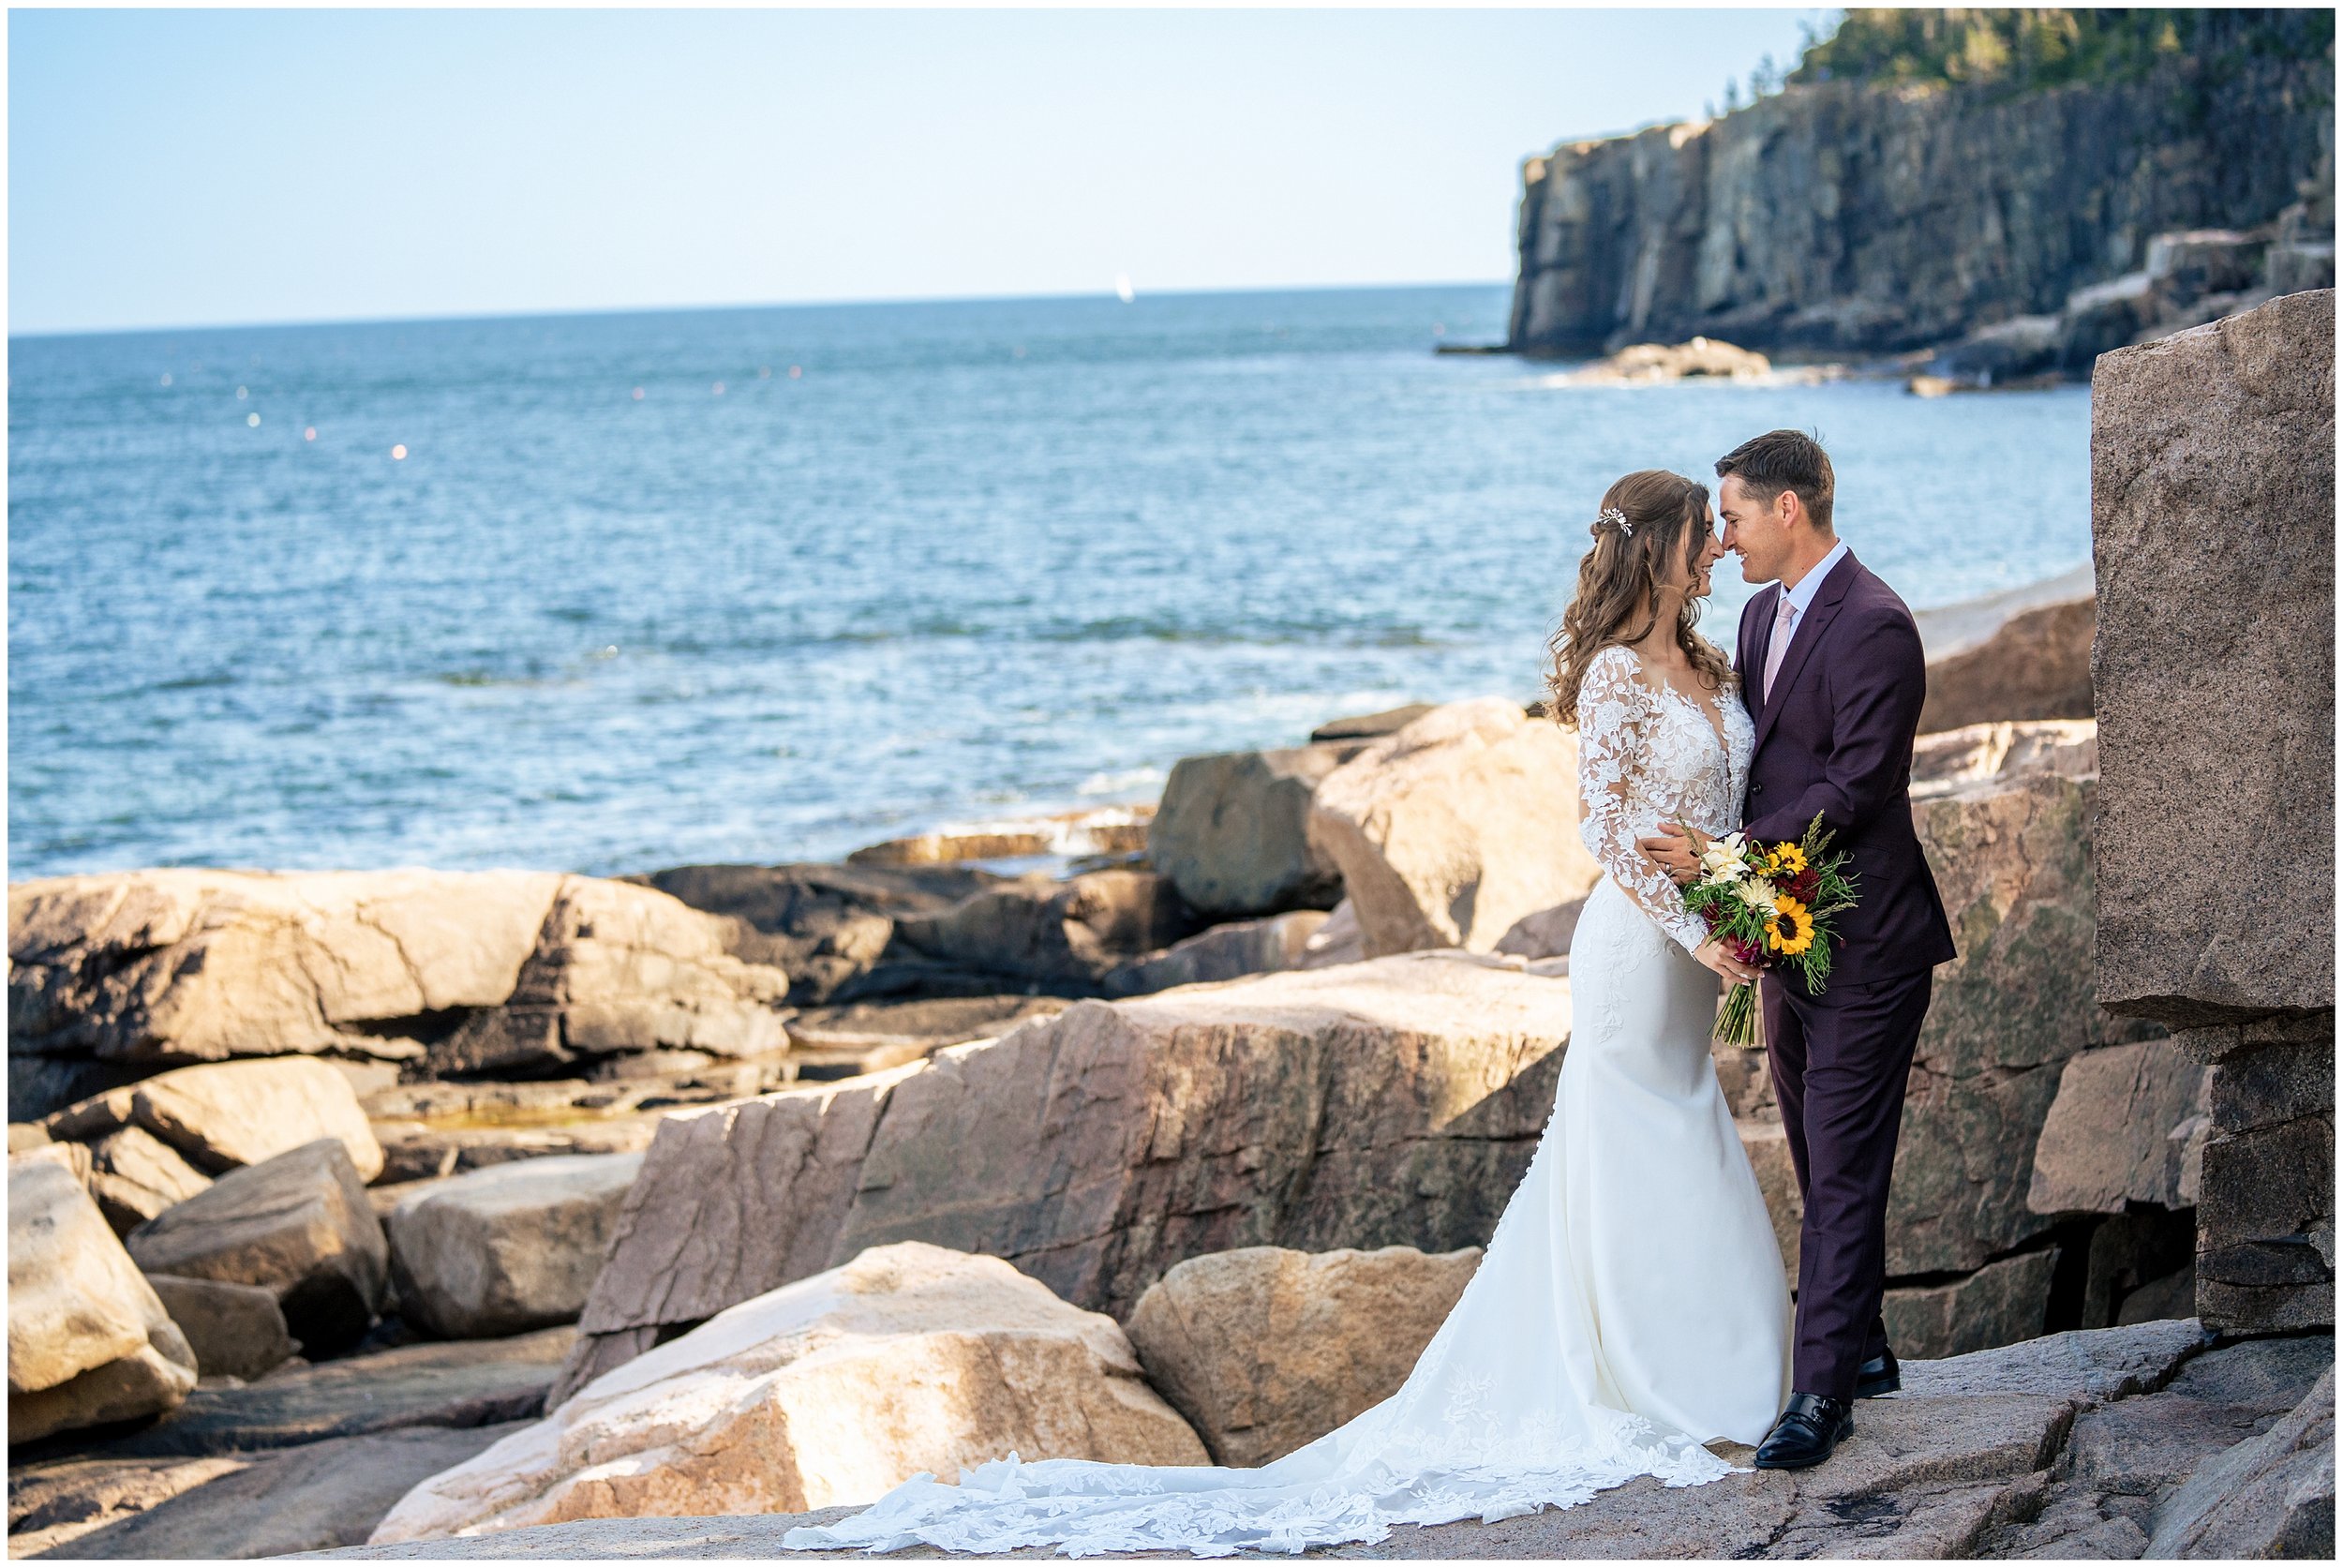 Acadia National Park Wedding Photographers, Bar Harbor Wedding Photographers, Two Adventurous Souls- 082423_0040.jpg